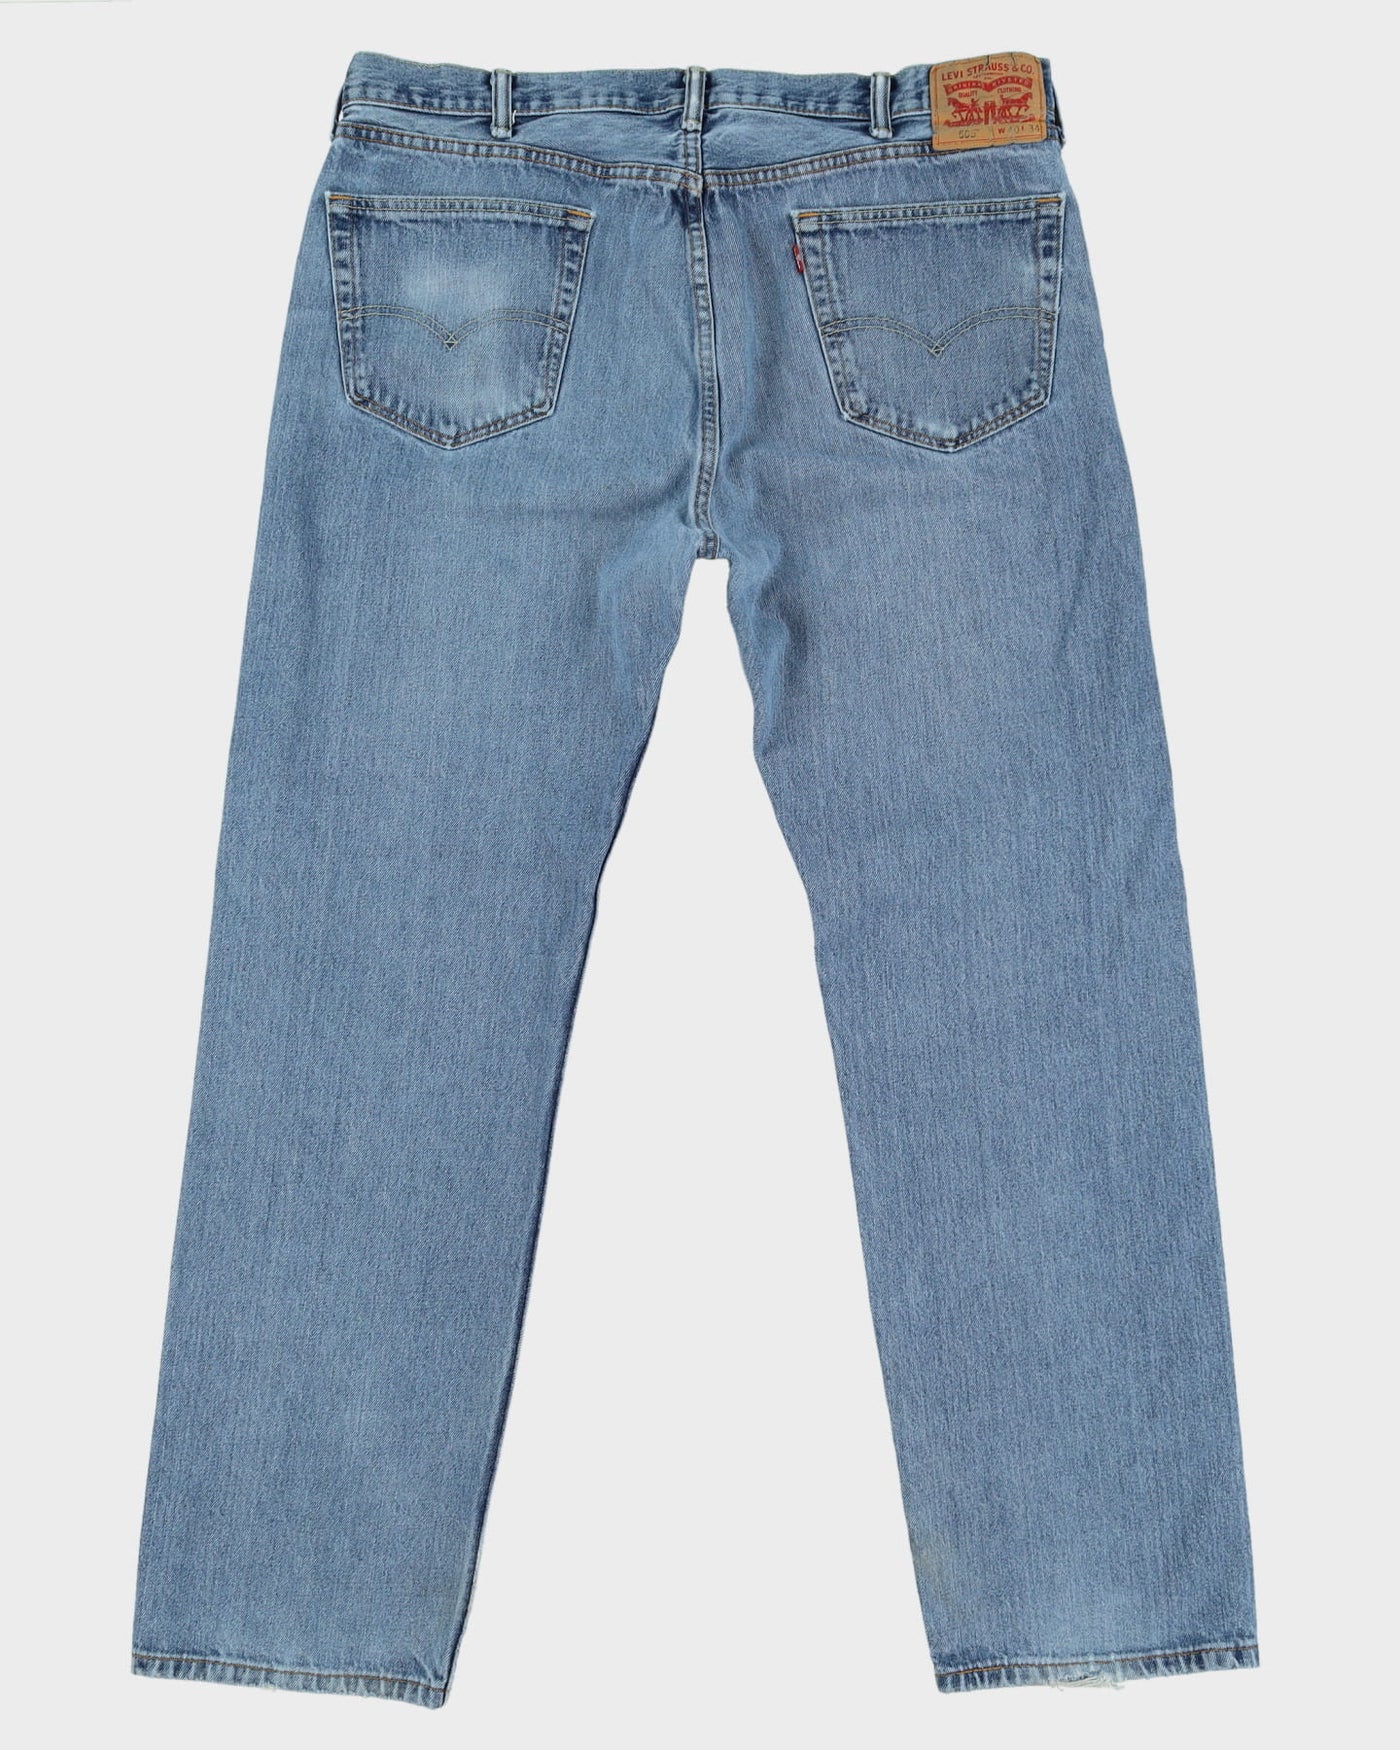 Levi's 505 Blue Medium Wash Jeans - W40 L34